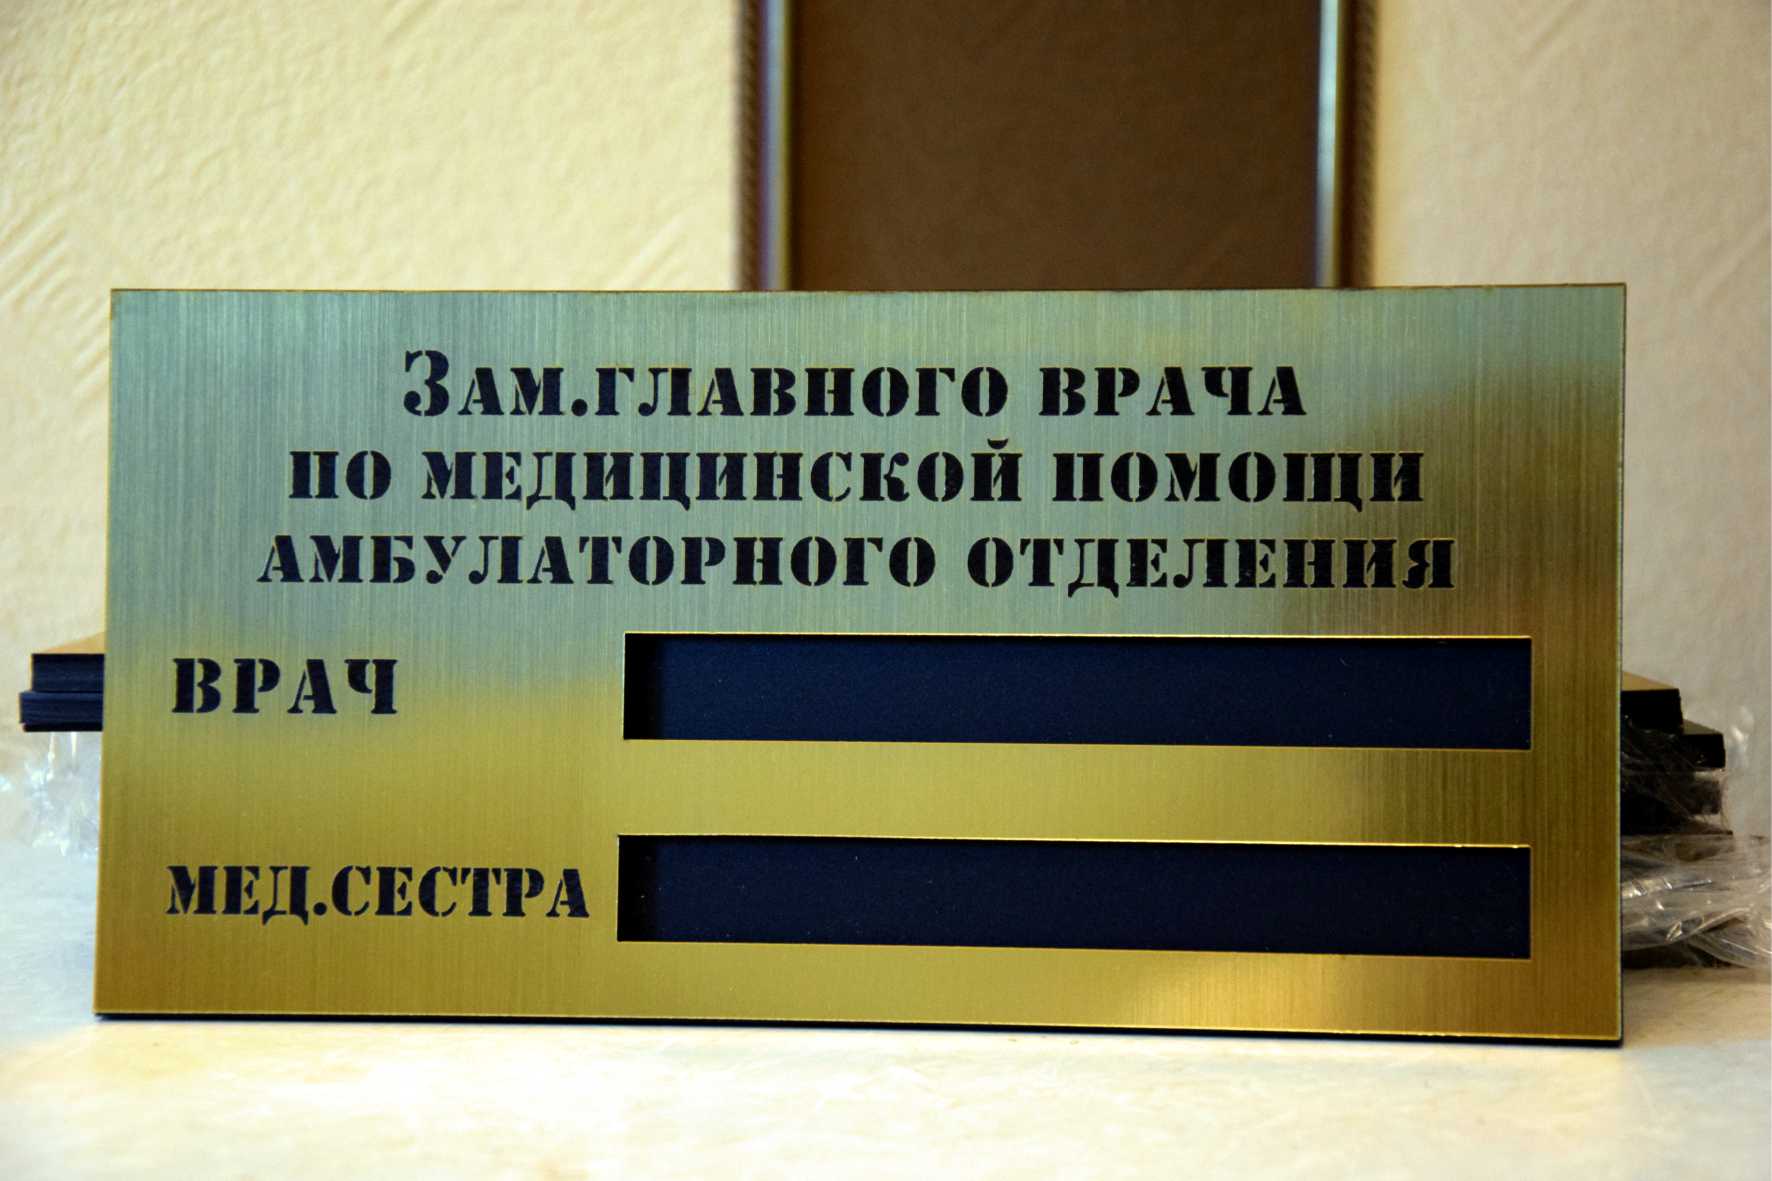 Исполнен заказ на изготовление табличек со сменной информацией для поликлиники Ростова-на-Дону. 